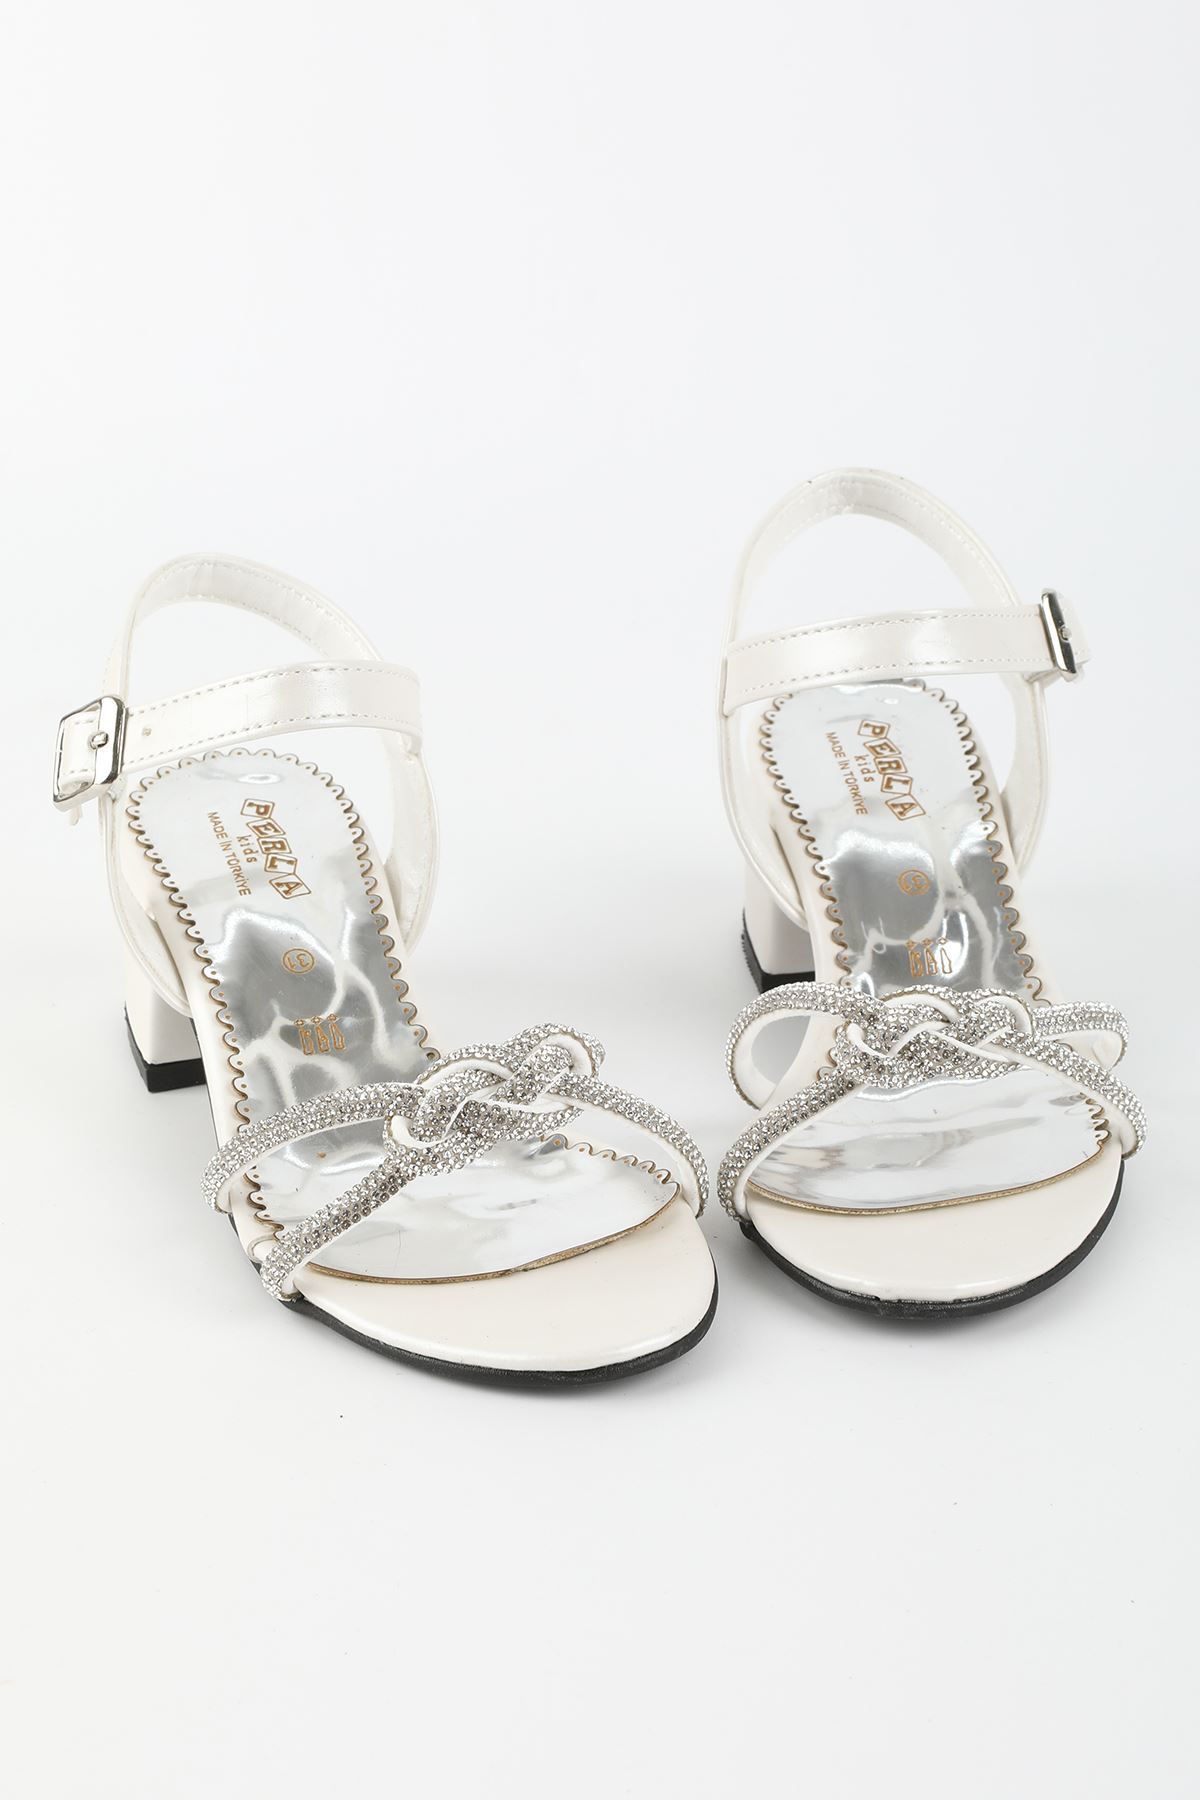 İeg Perla Kids Kız Çocuk Topuklu Taşlı Abiye Ayakkabı&sandalet(26-36 NUM.)